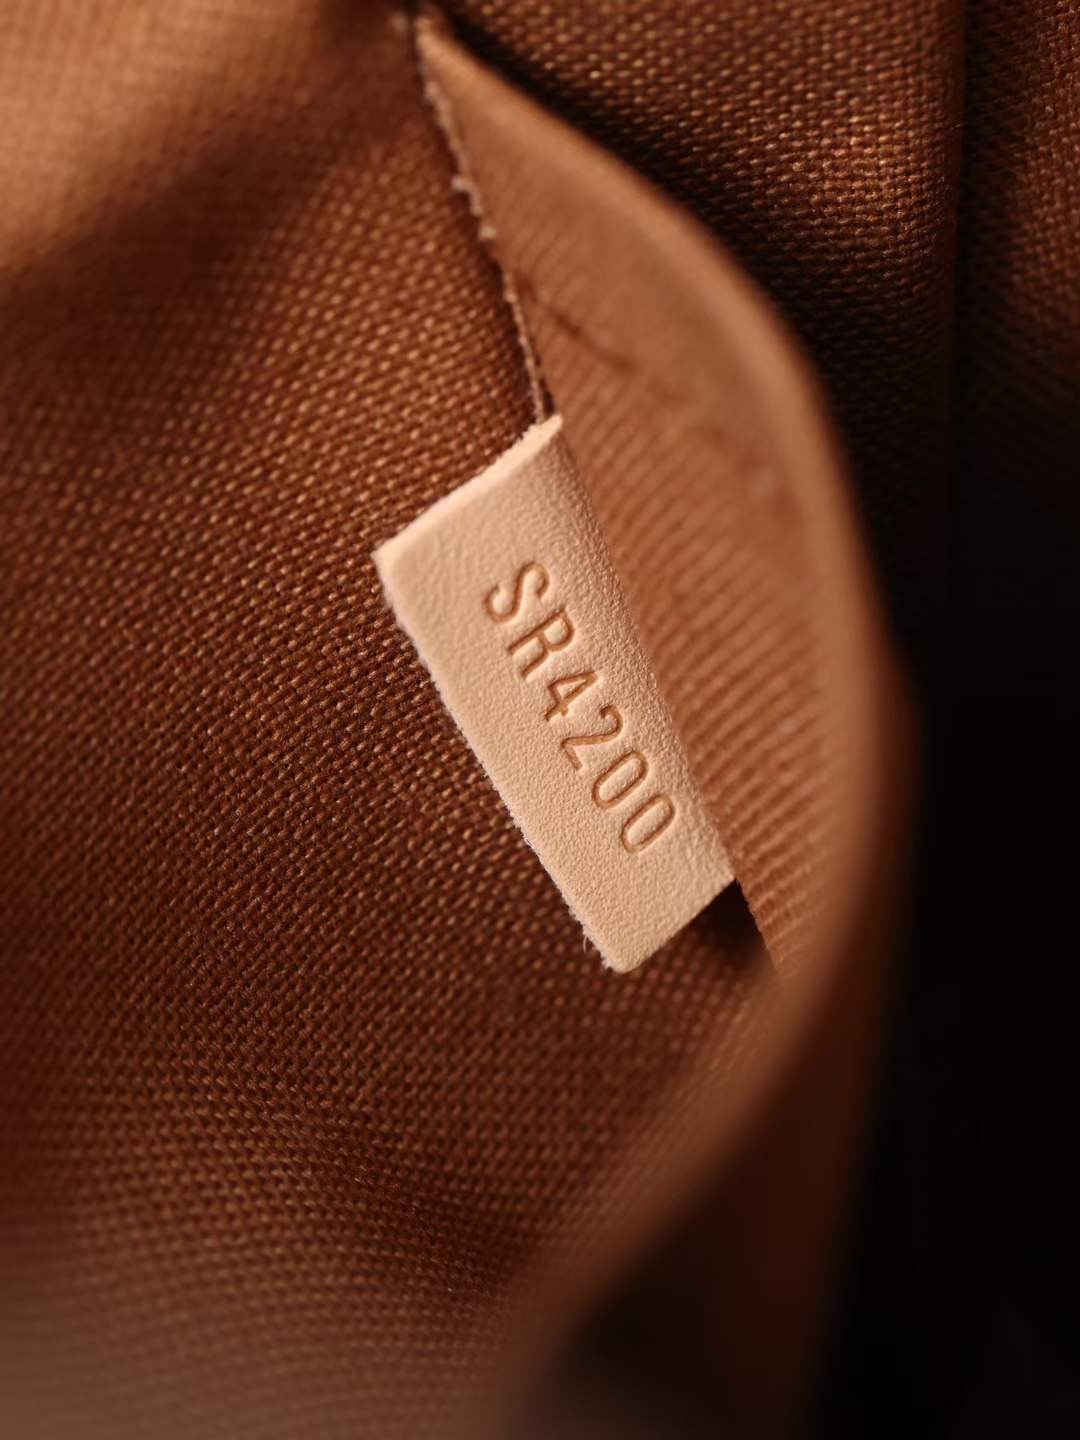 Louis Vuitton M40712 Pochette Accessoires 23.5 x 13.5 x 4 cm Inside pocket detail (2022 Special)-Best Quality Fake Louis Vuitton Bag Online Store, Replica designer bag ru